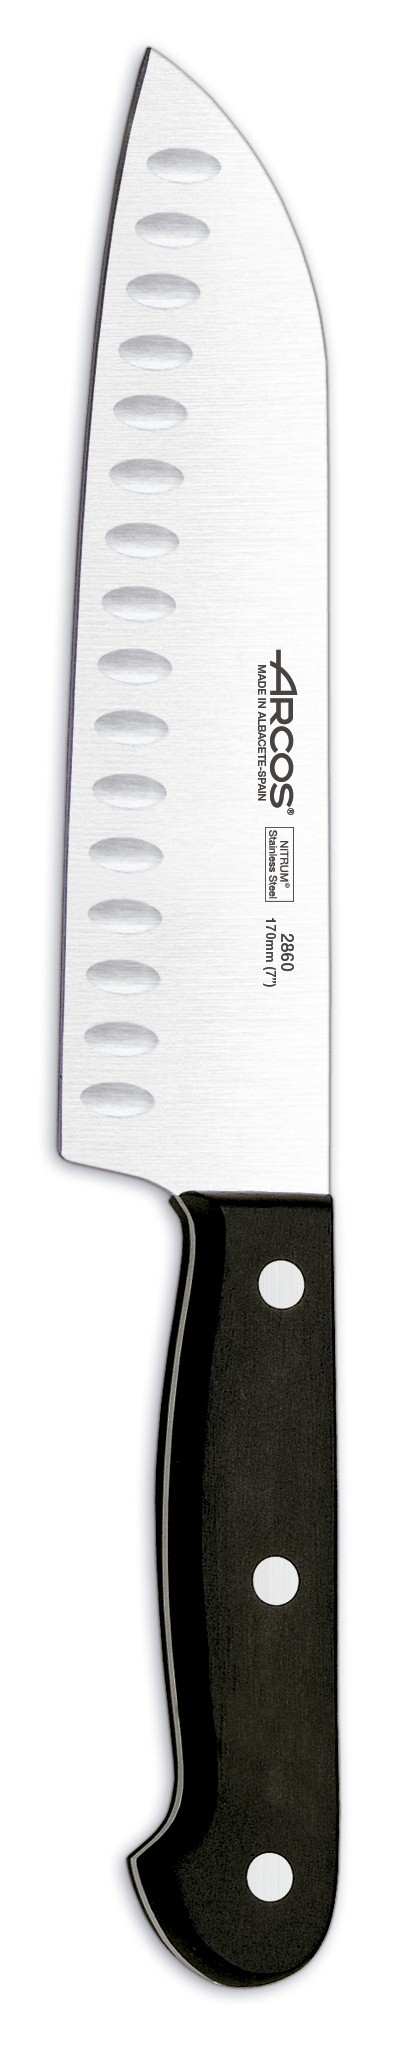 סכין סנטוקו מחורץ דגם 2860 - Arcos